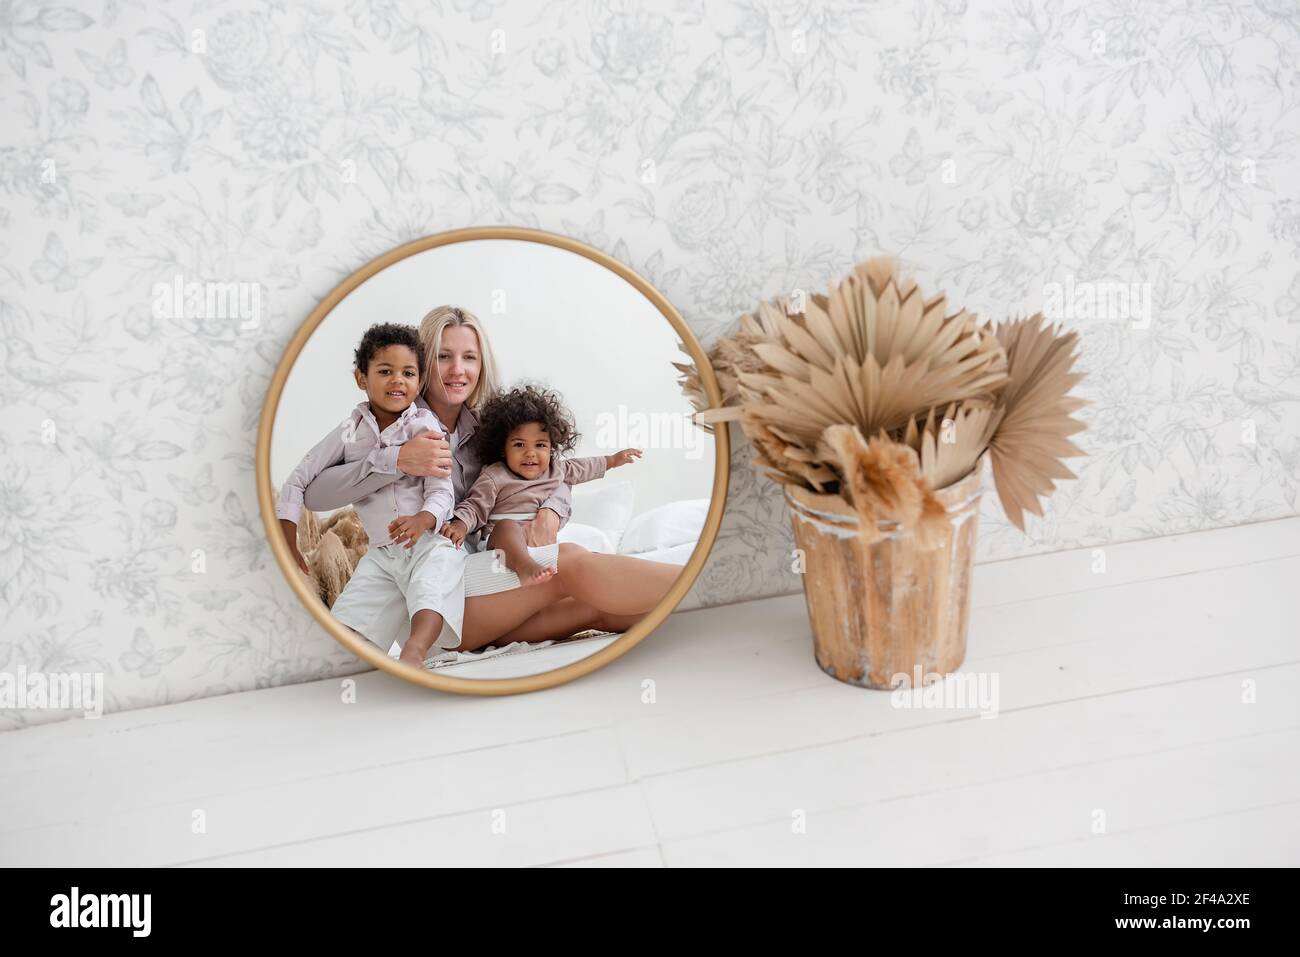 En el espejo de oro redondo, joven madre rubia caucásica sentada en suelo blanco de madera, con niños afroamericanos riendo. La mujer se abraza, besa hap Foto de stock